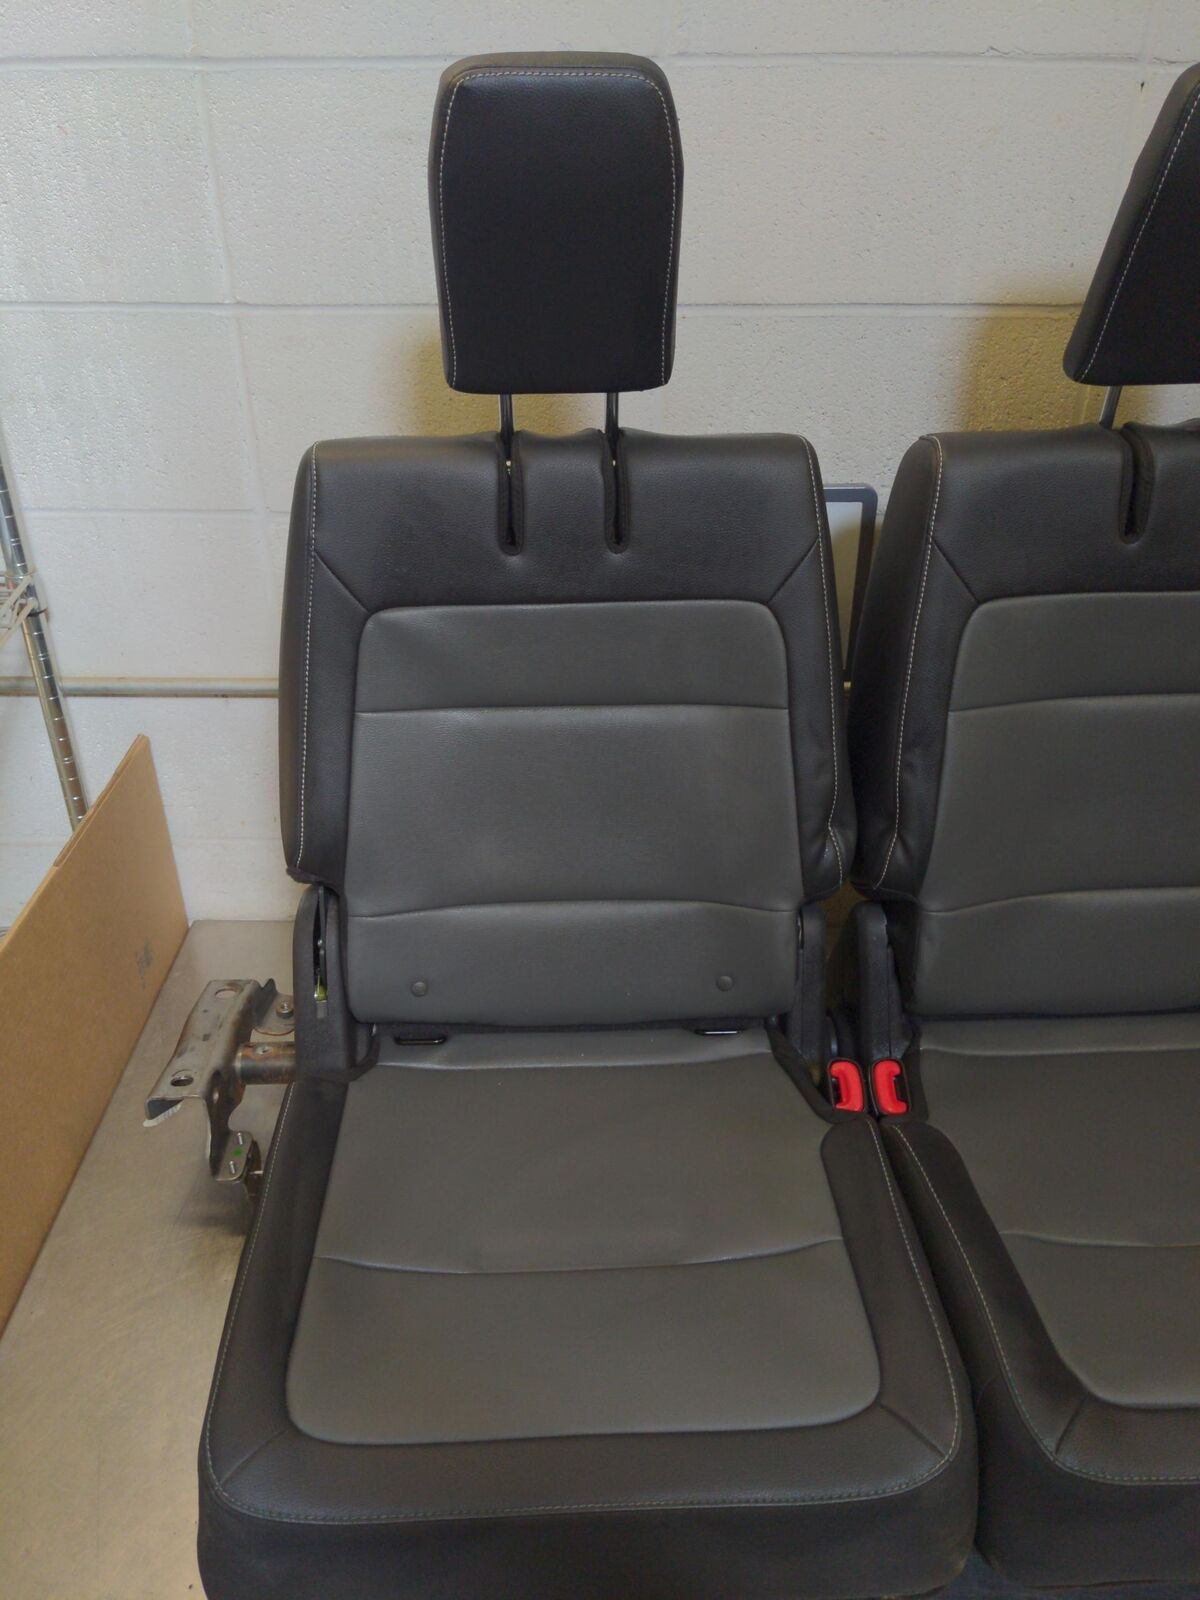 2015 FORD FLEX Third 3rd Row Rear Back Seat Black / Grey leather